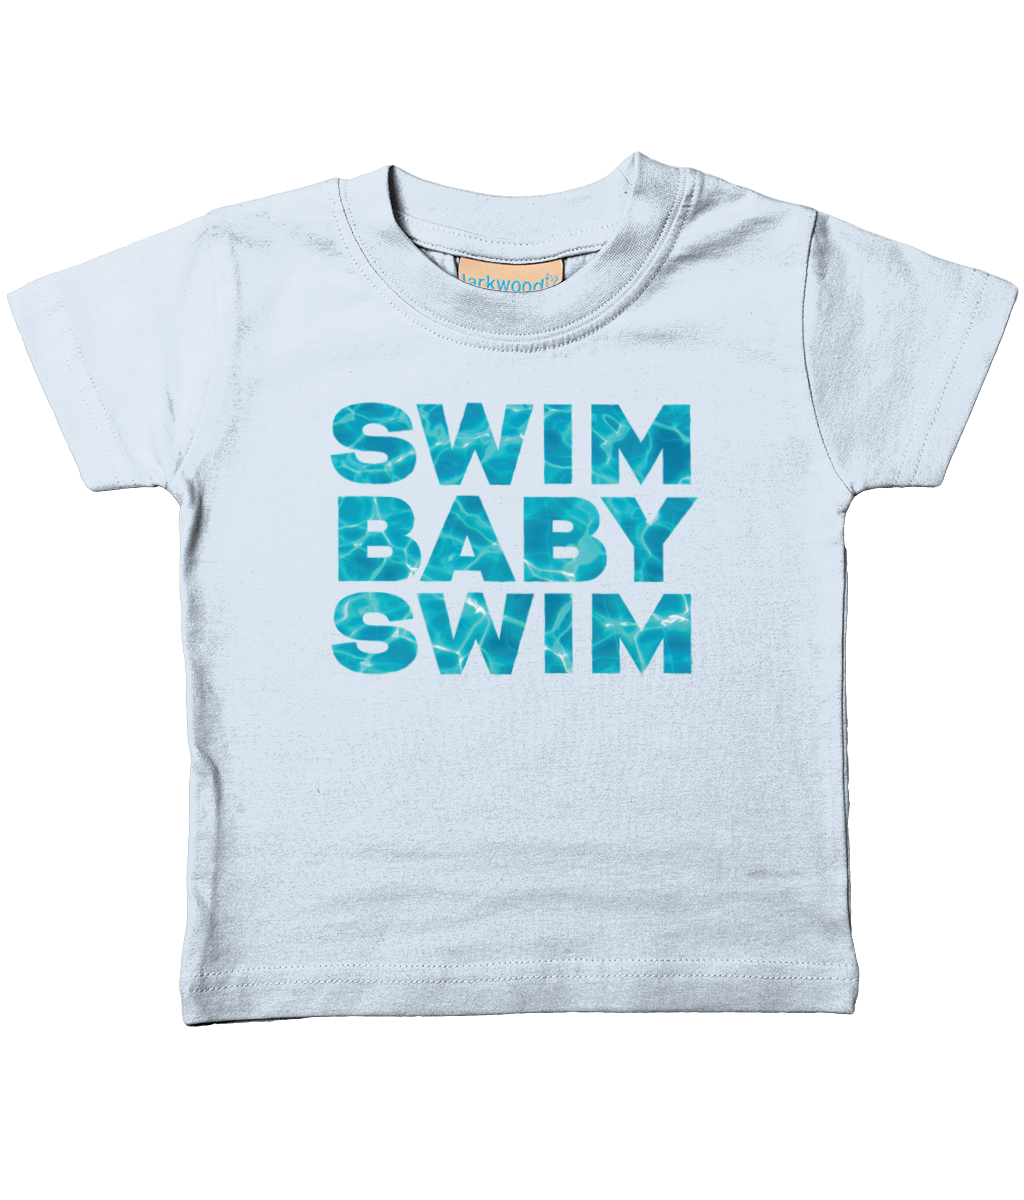 Baby/Toddler T-Shirt SWIM BABY SWIM